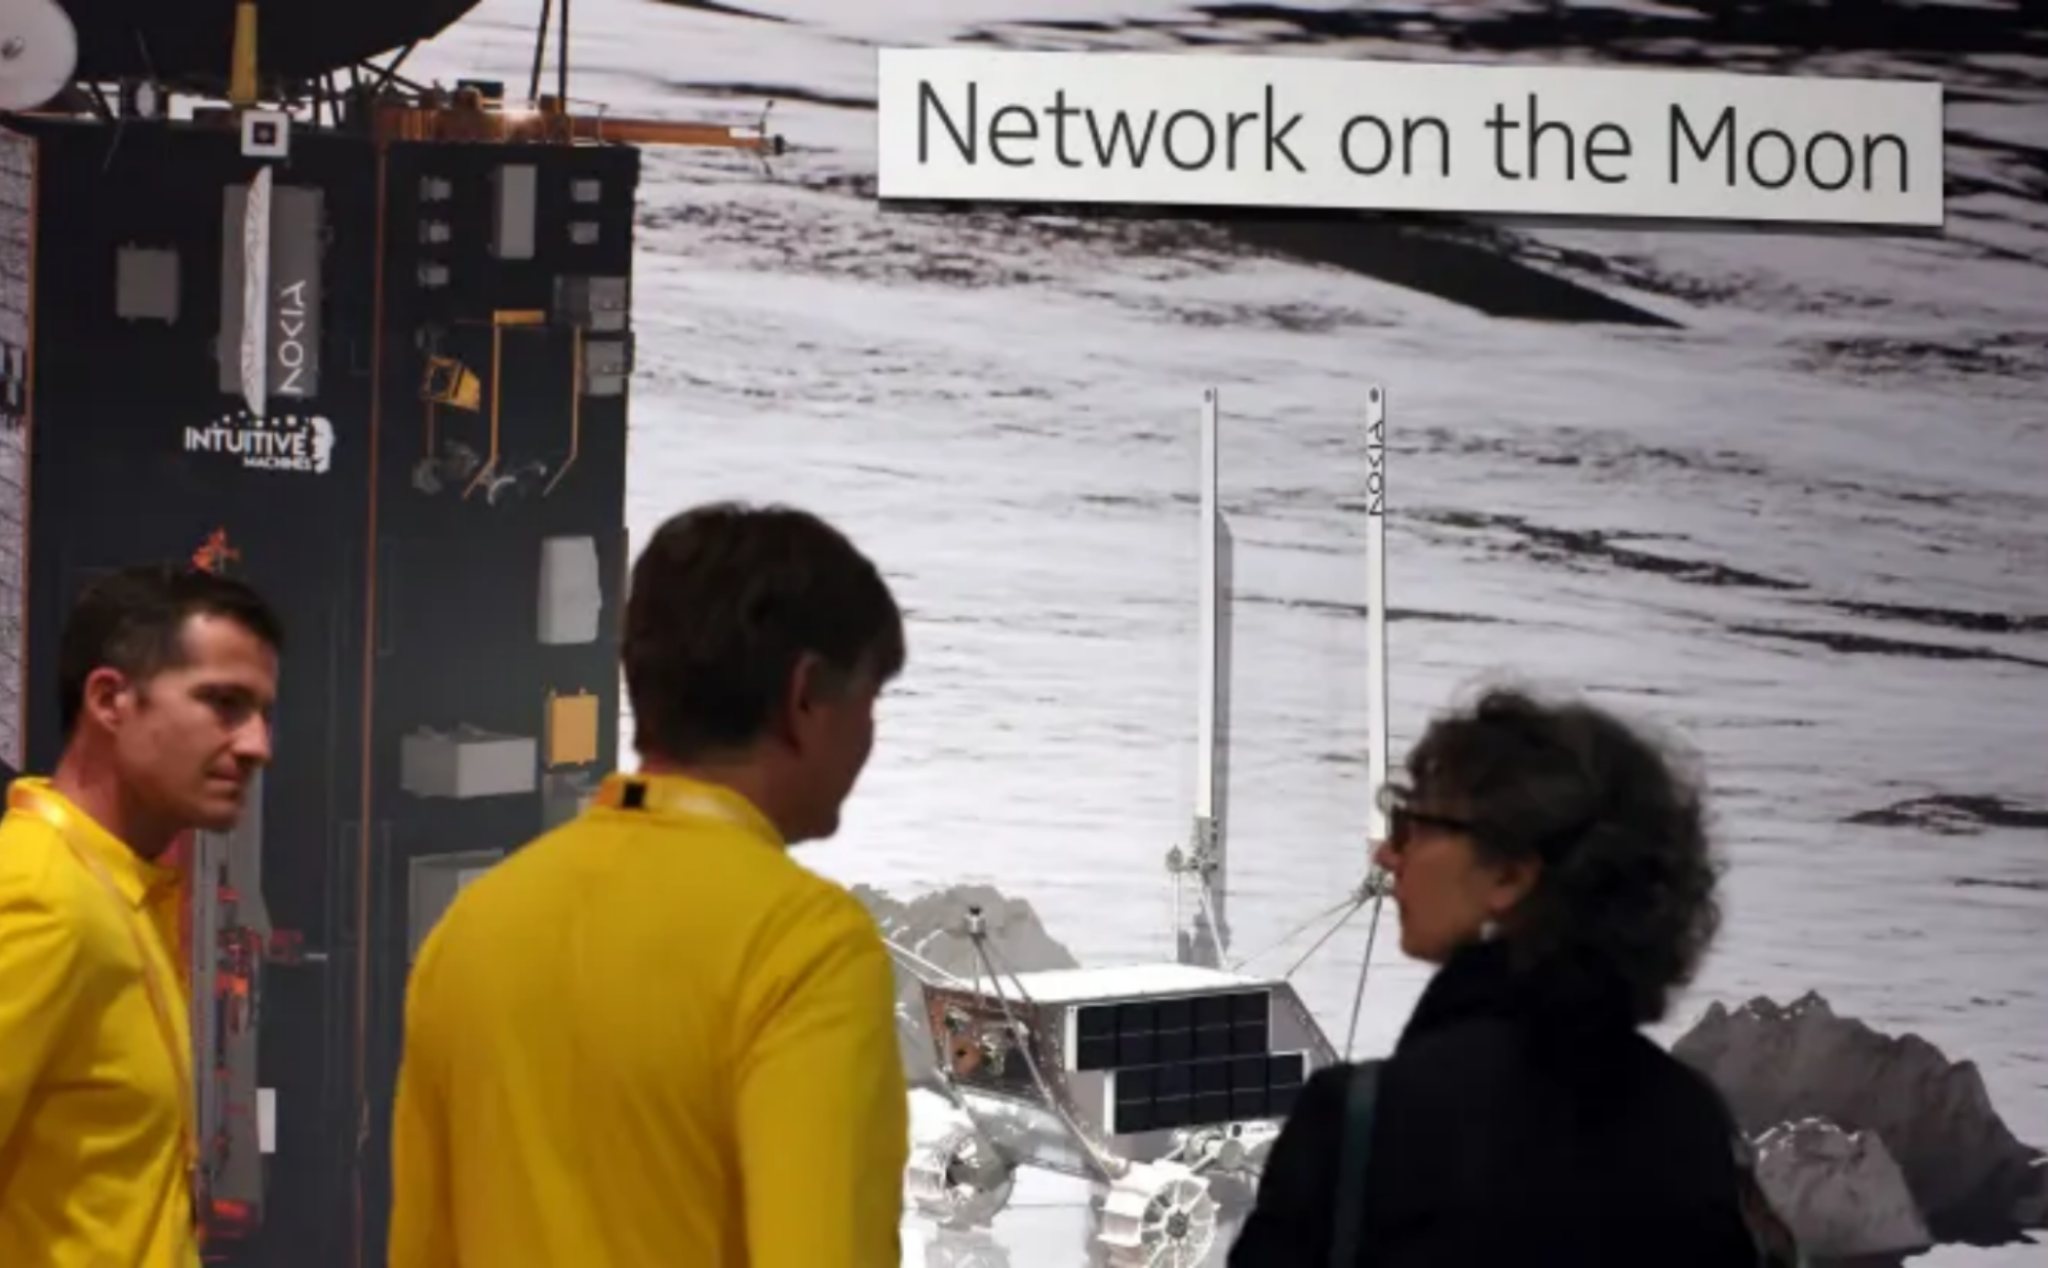 Nokia chuẩn bị lắp đặt mạng 4G ở trên Mặt trăng trong năm nay